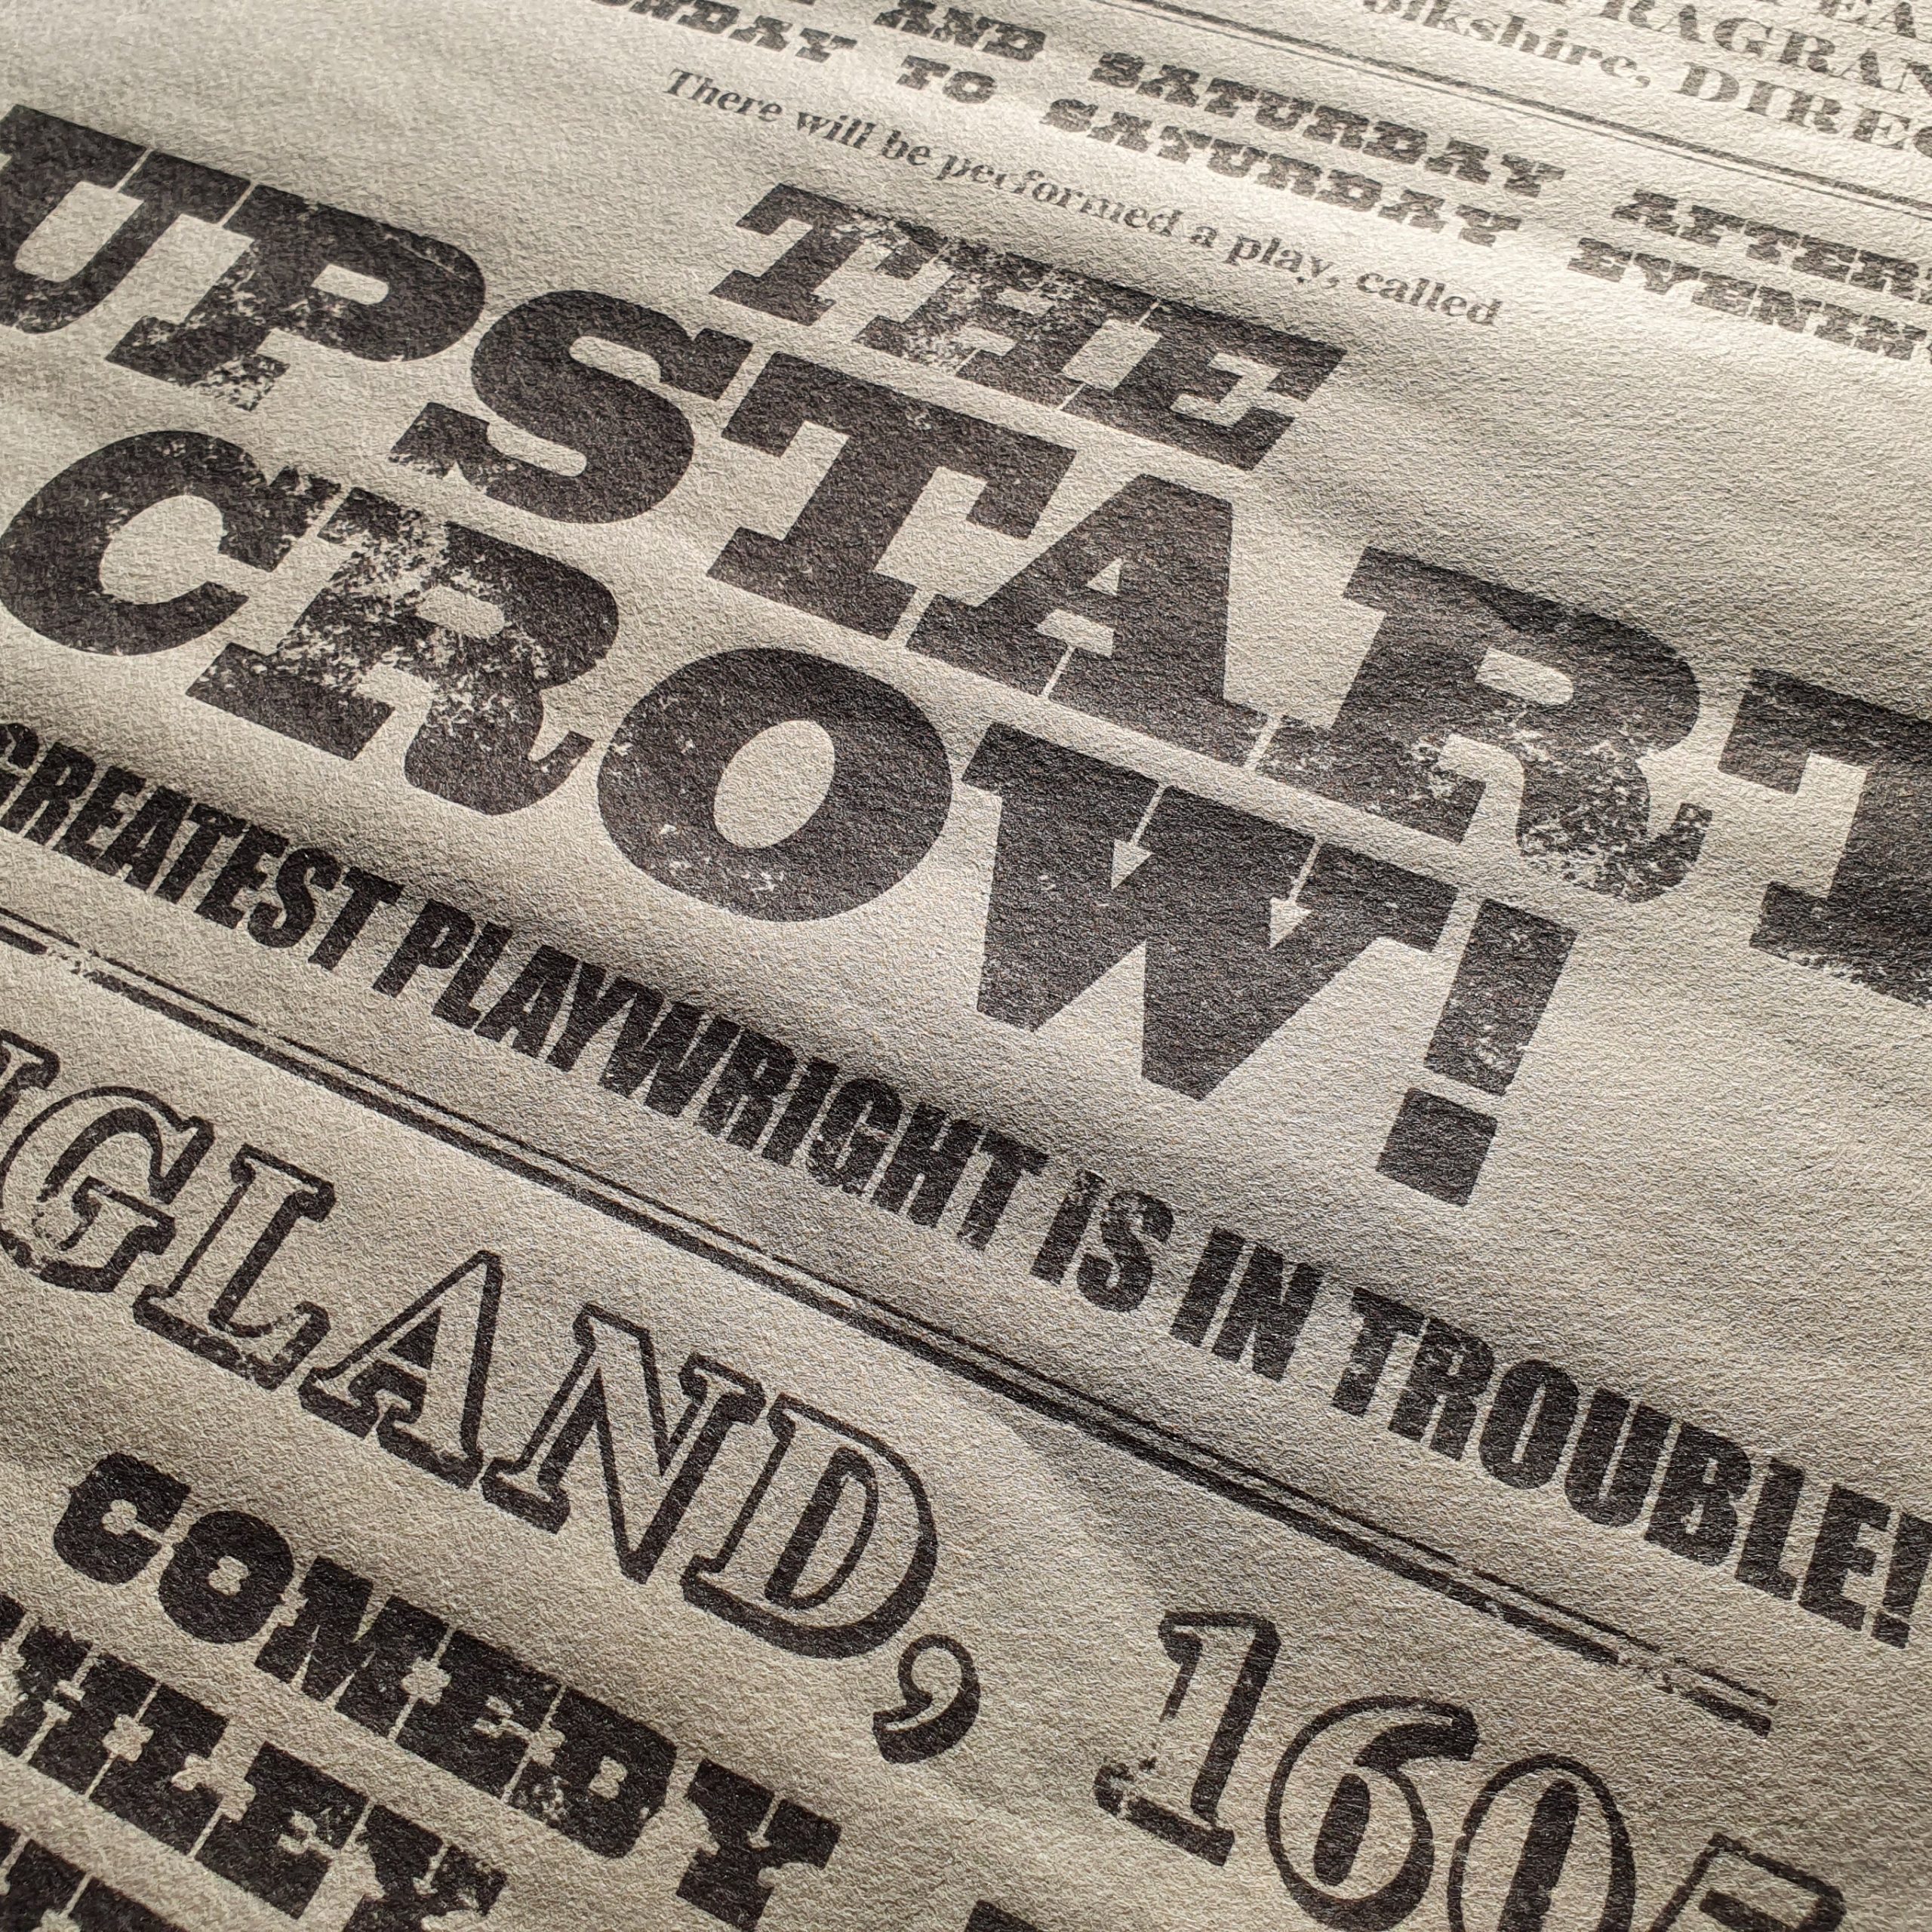 Upstart Crow Letterpress Playbill 2/8